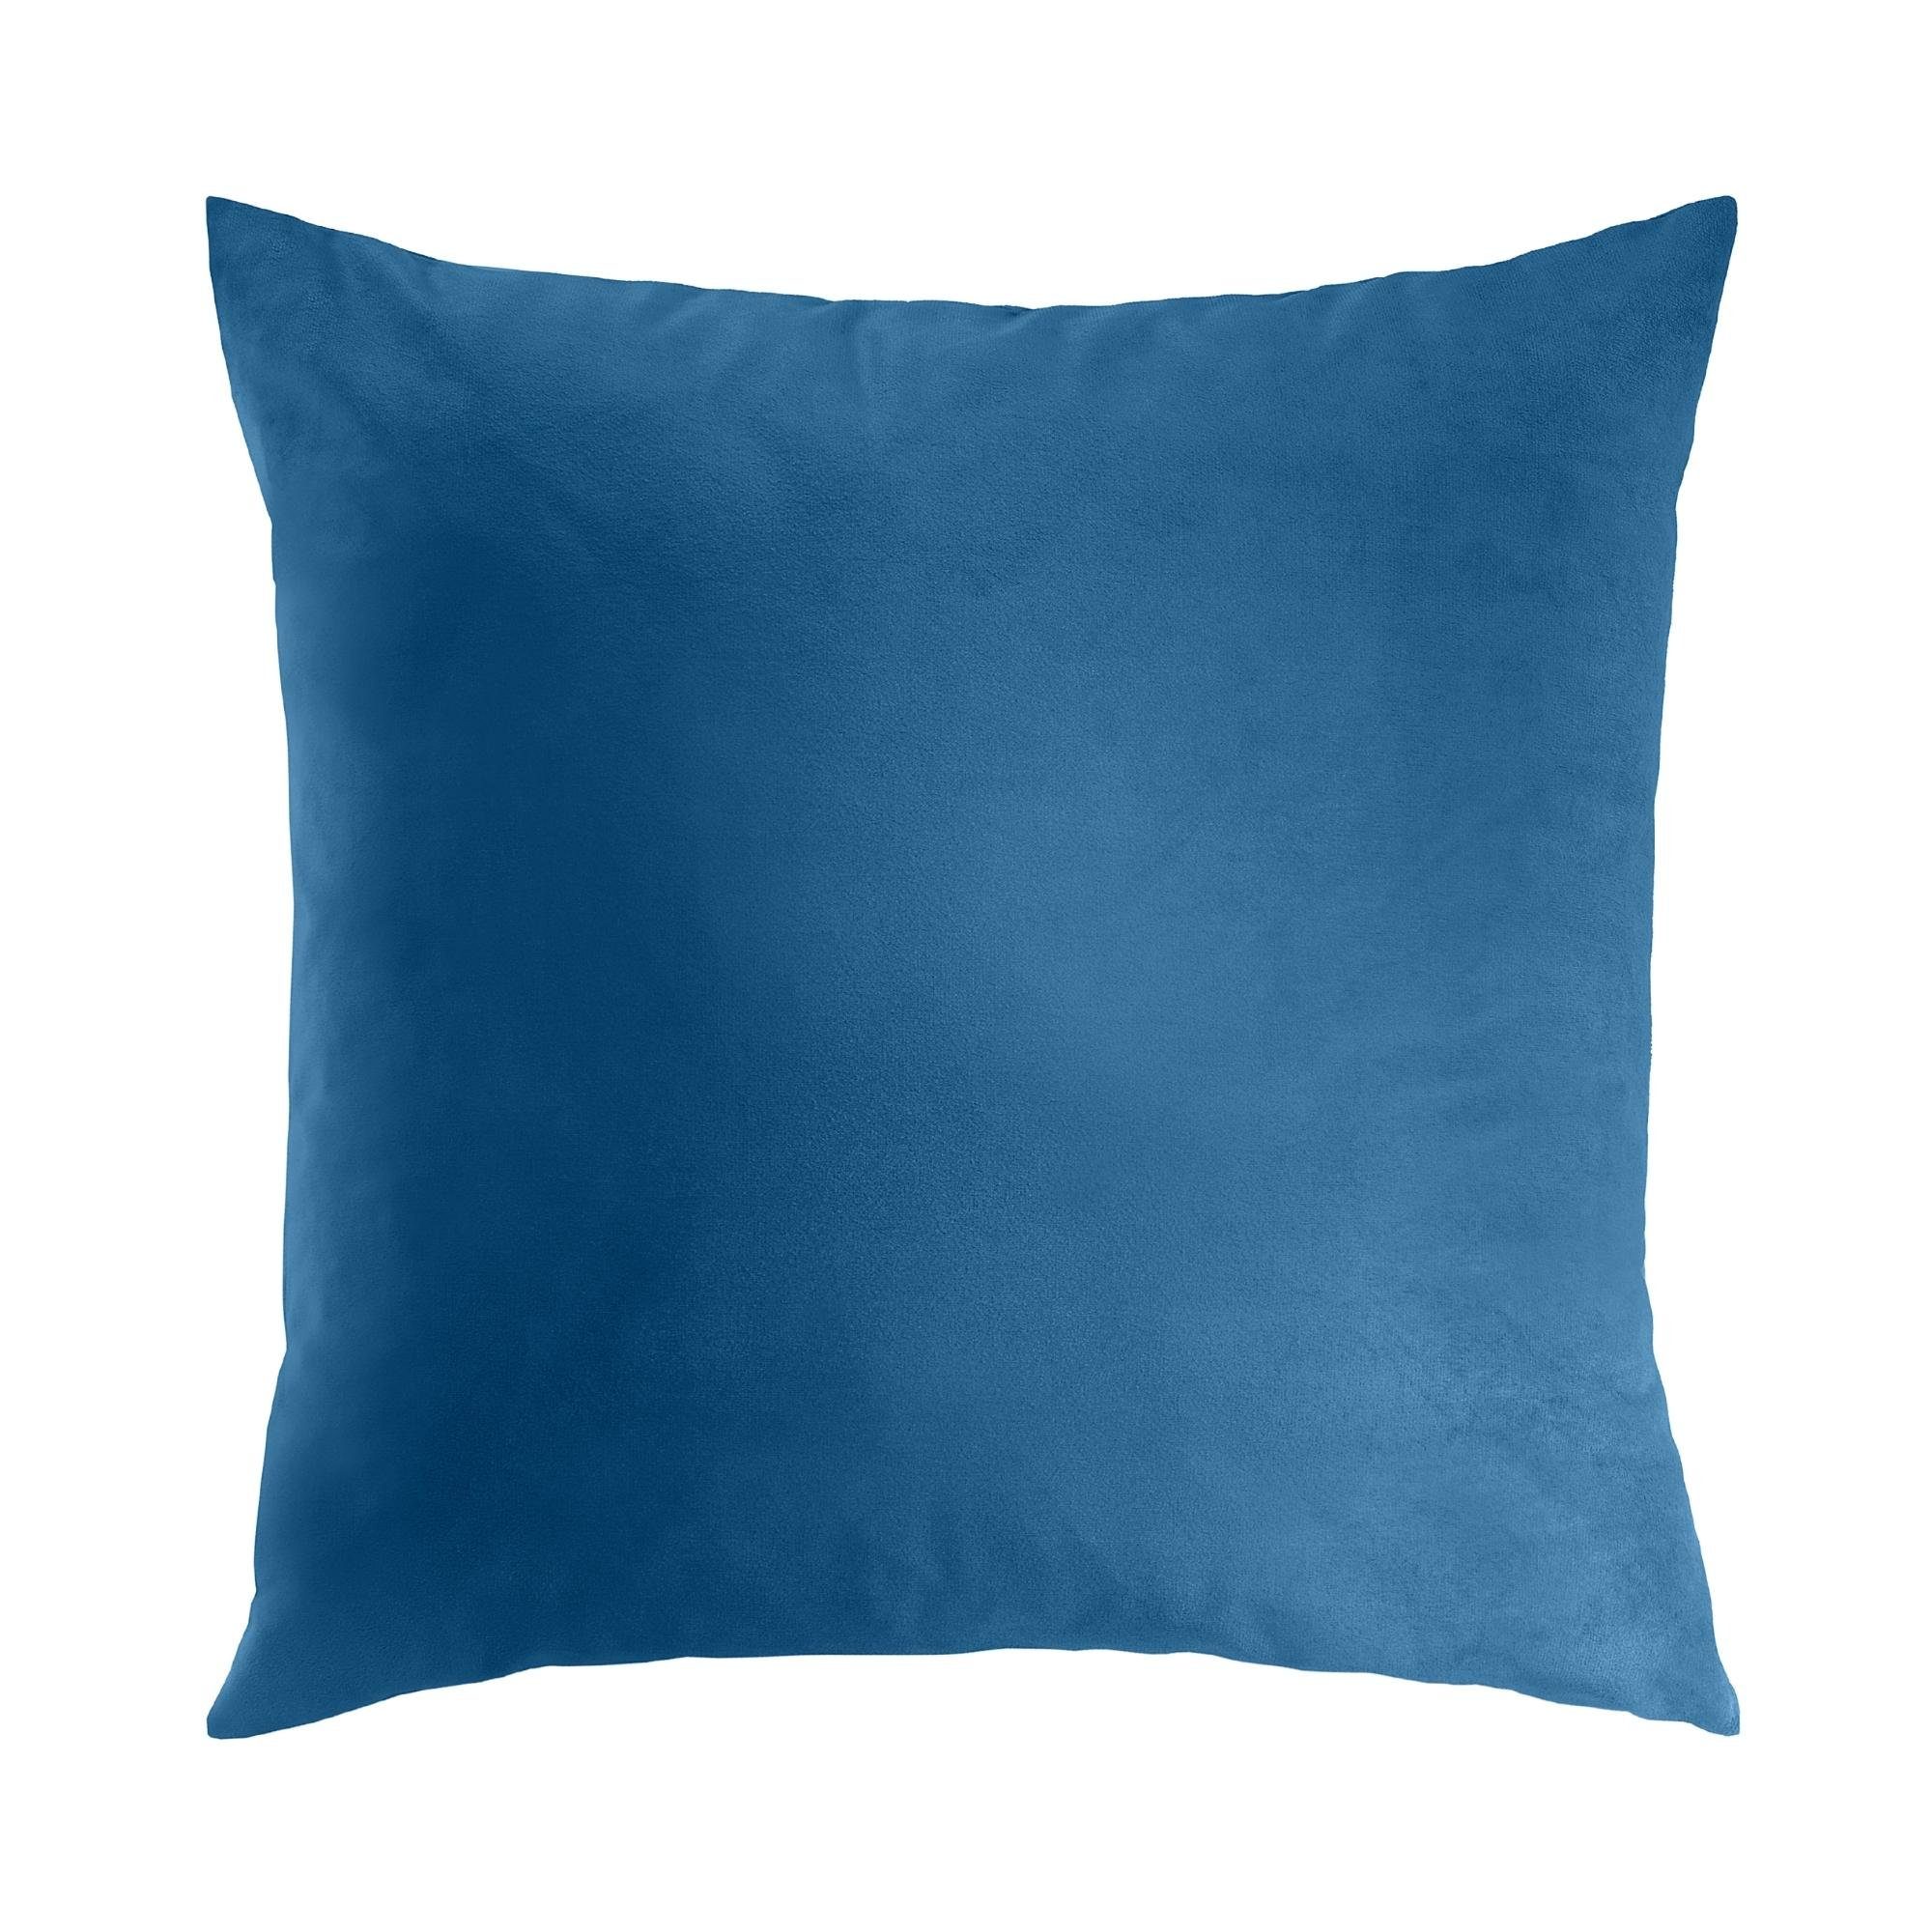 Blau/Royalblau einfarbig, waschbar, Bezug mit und Sofakissen, Mantta, Dekokissen 50x50cm REALLaxx Füllung,